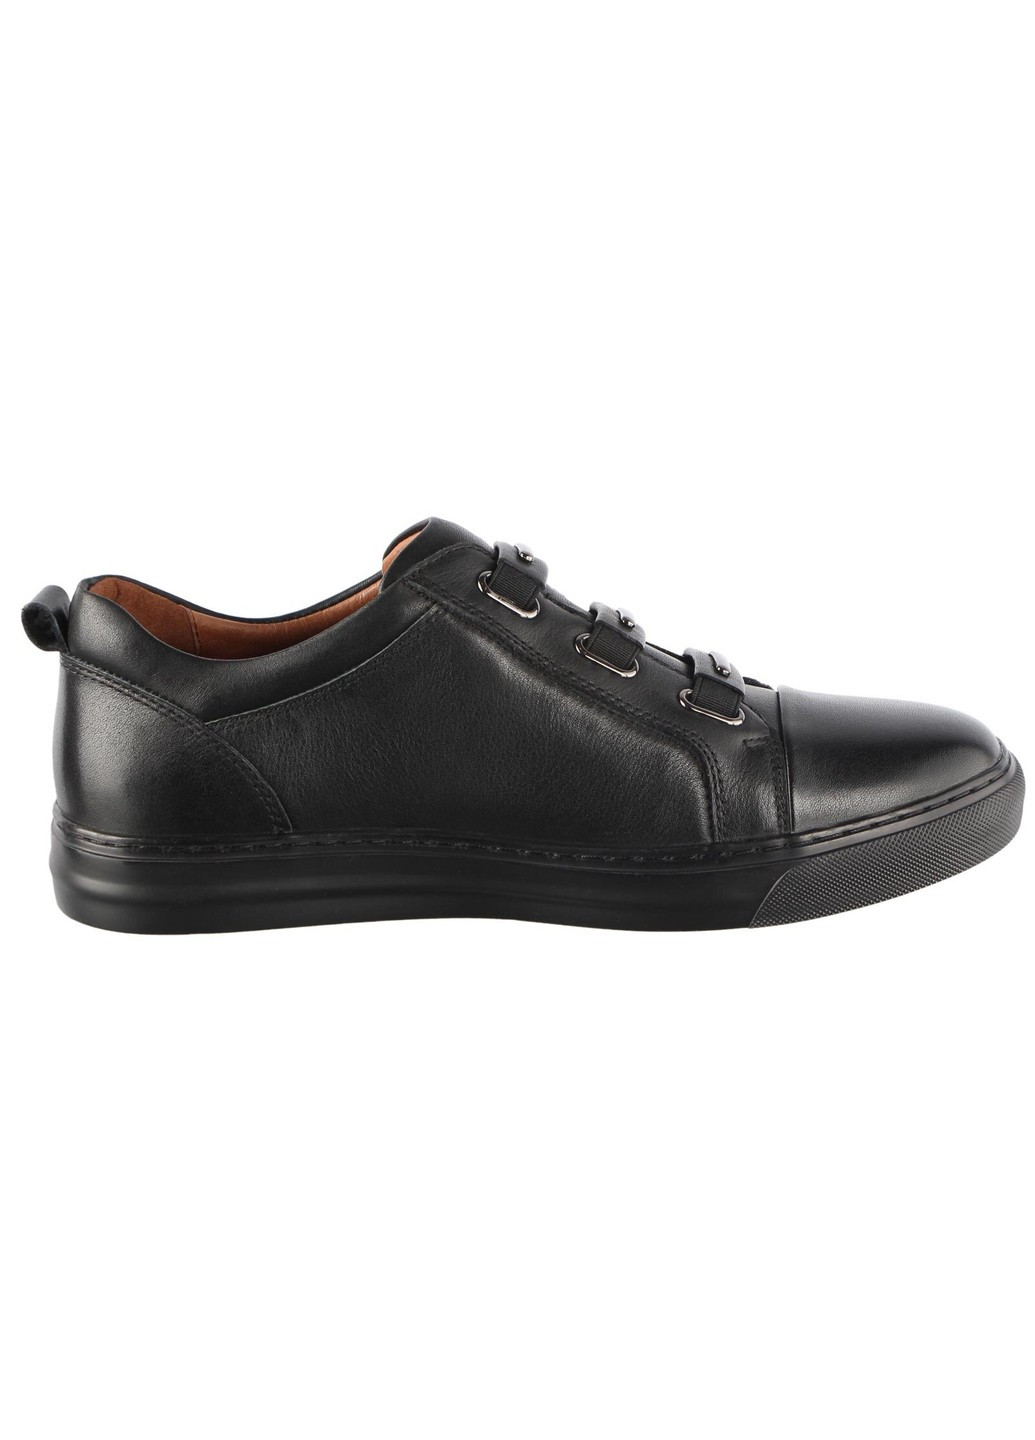 Черные демисезонные мужские кроссовки 132202 Lido Marinozzi